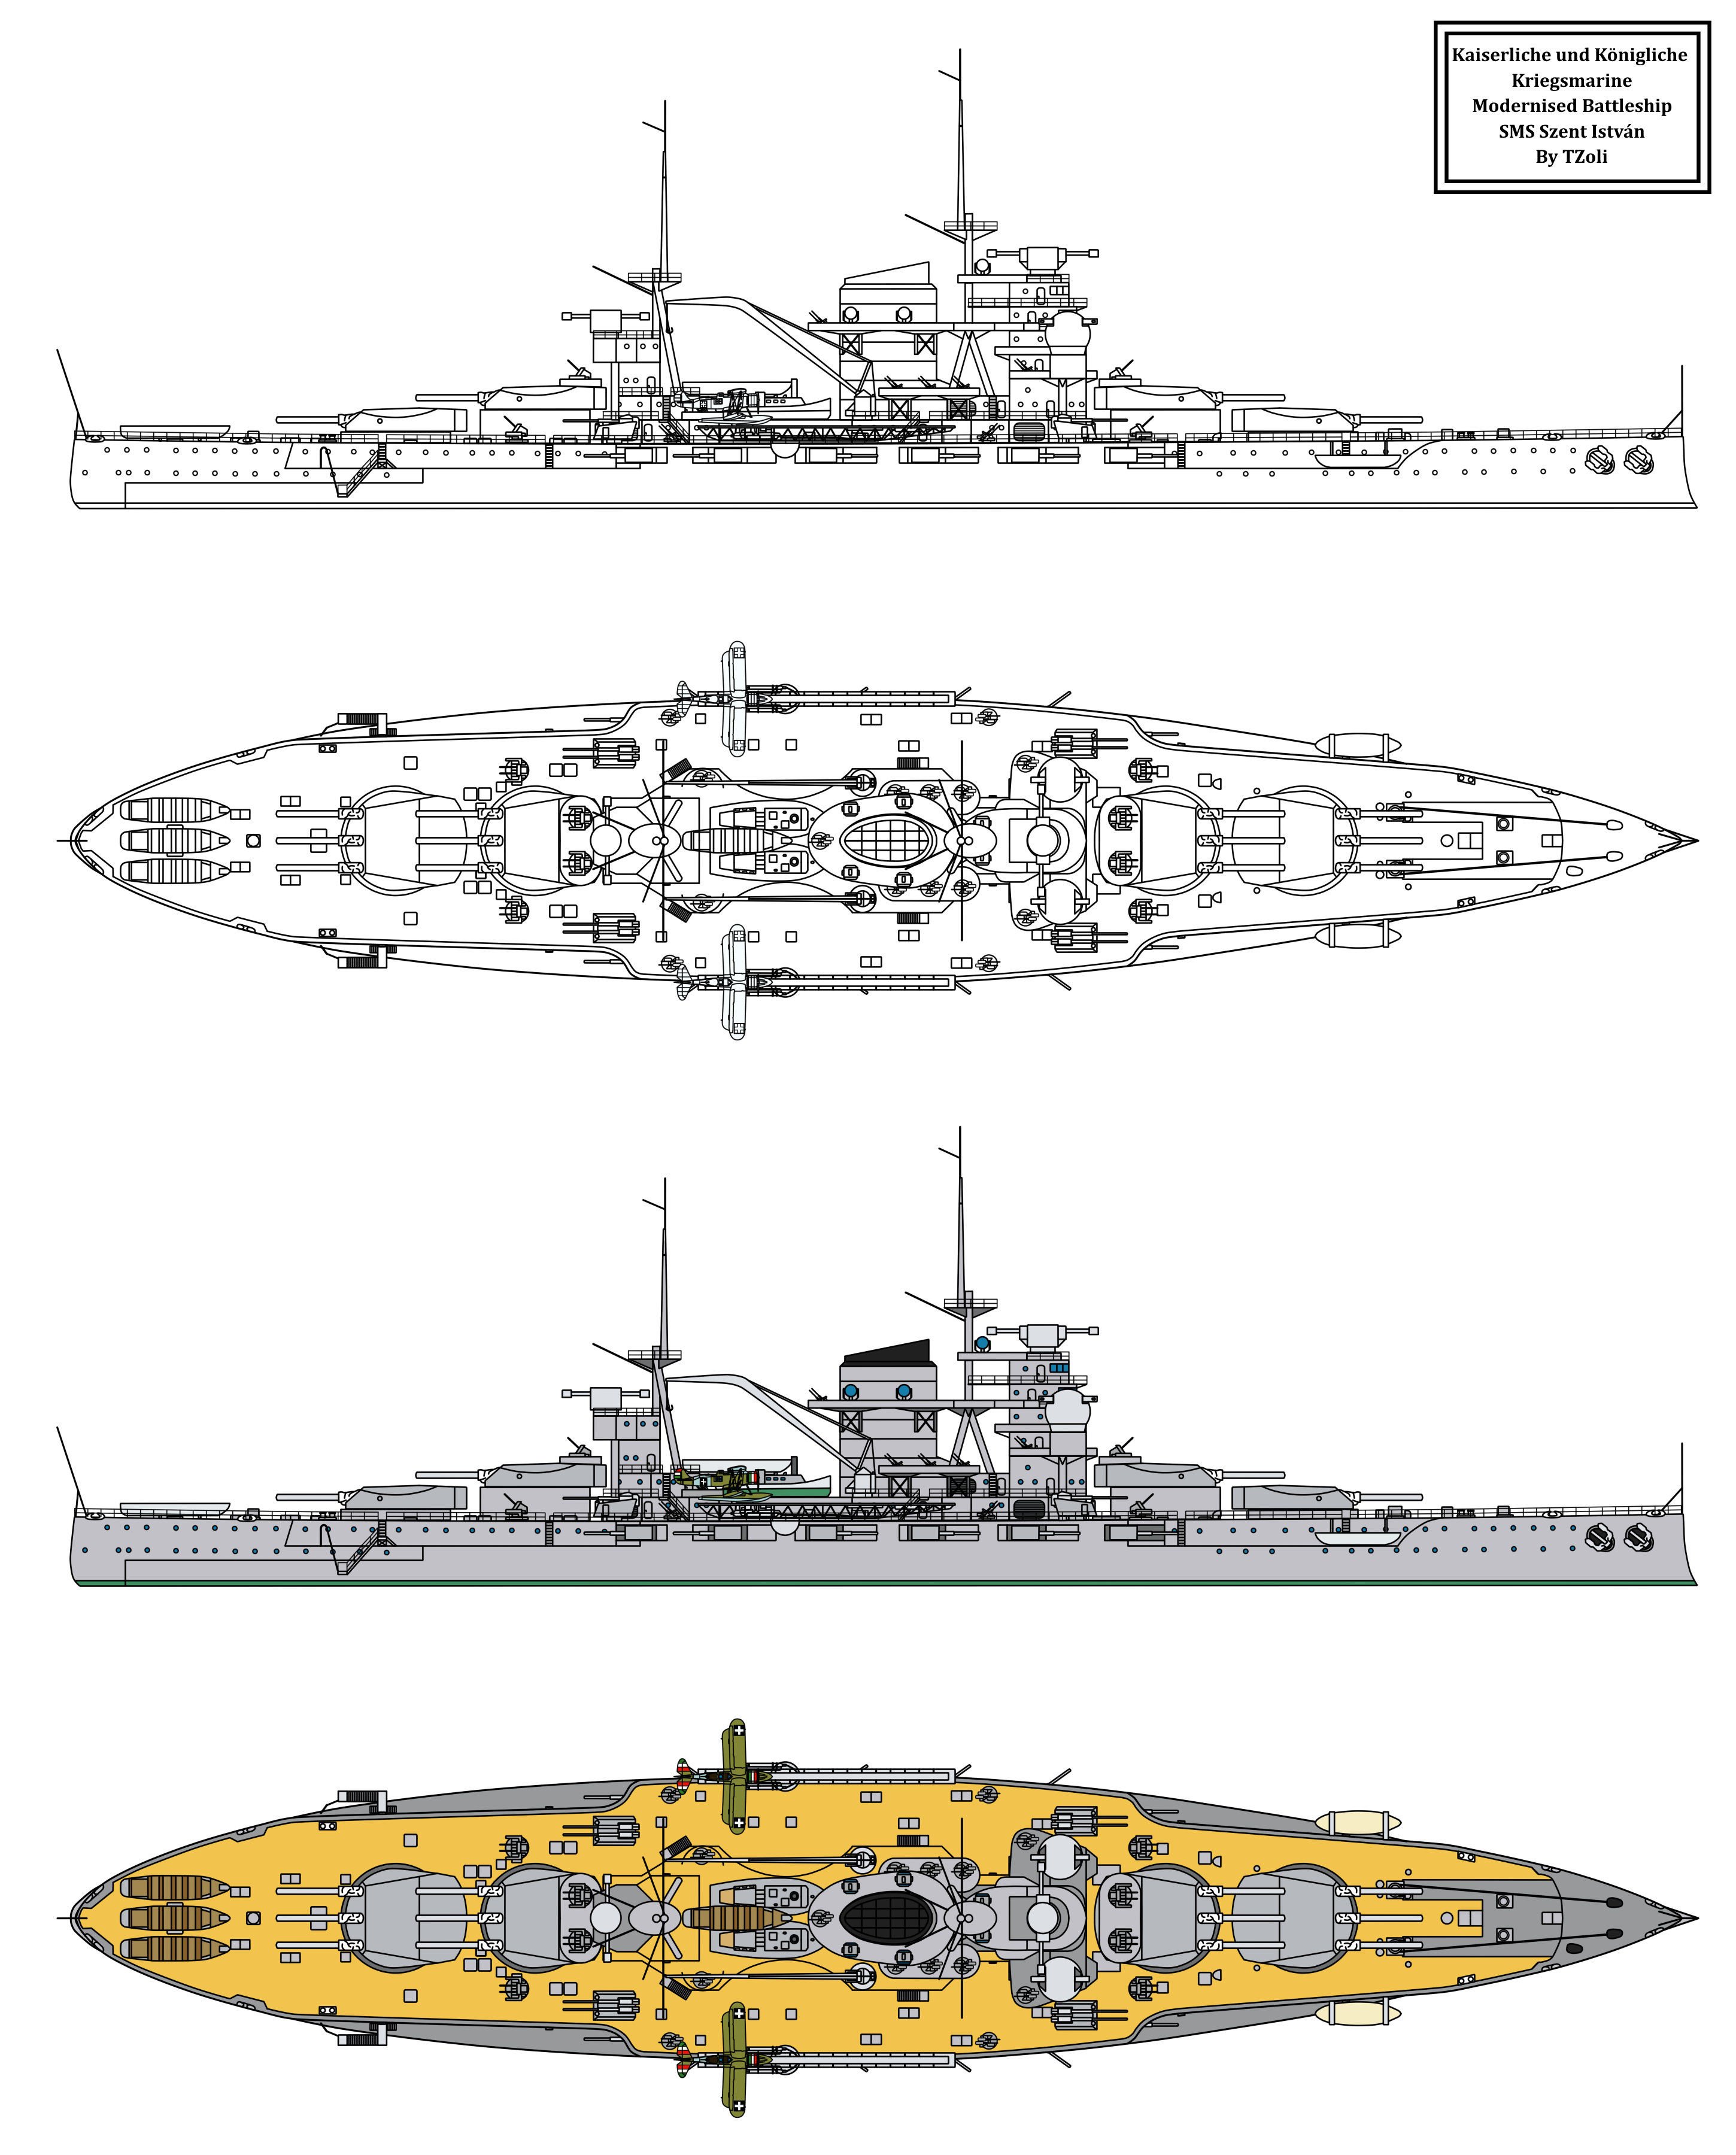 modernised_battleship_szent_istvan_by_tzoli-d99kii1.png